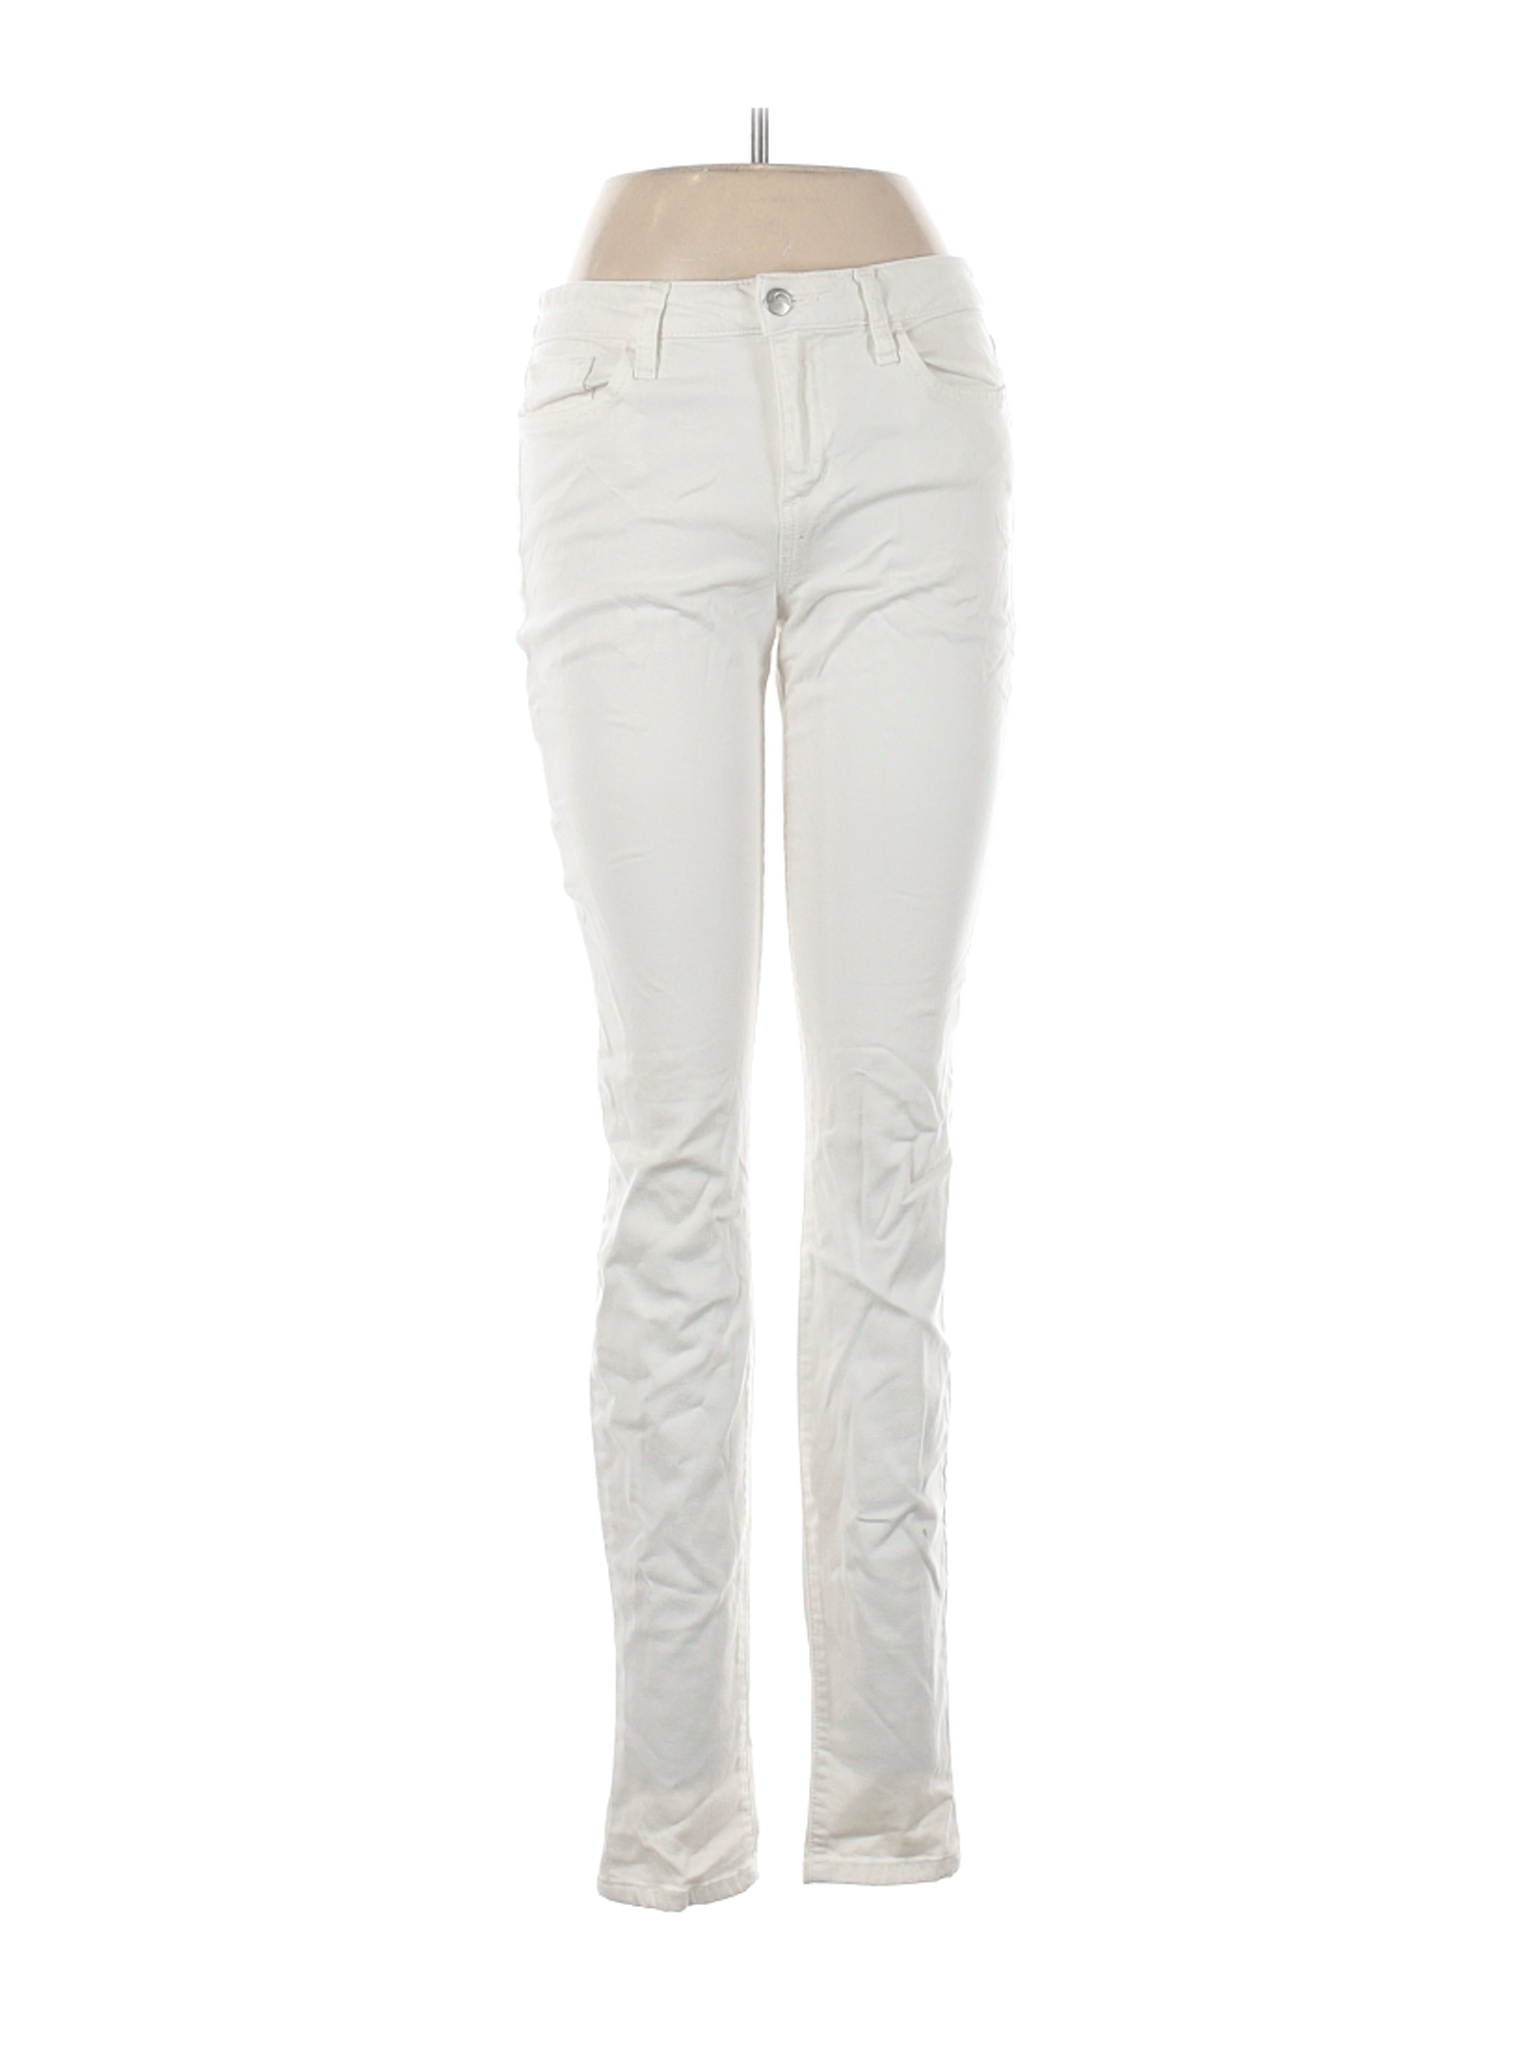 Joe's Jeans Women White Jeans 29W | eBay